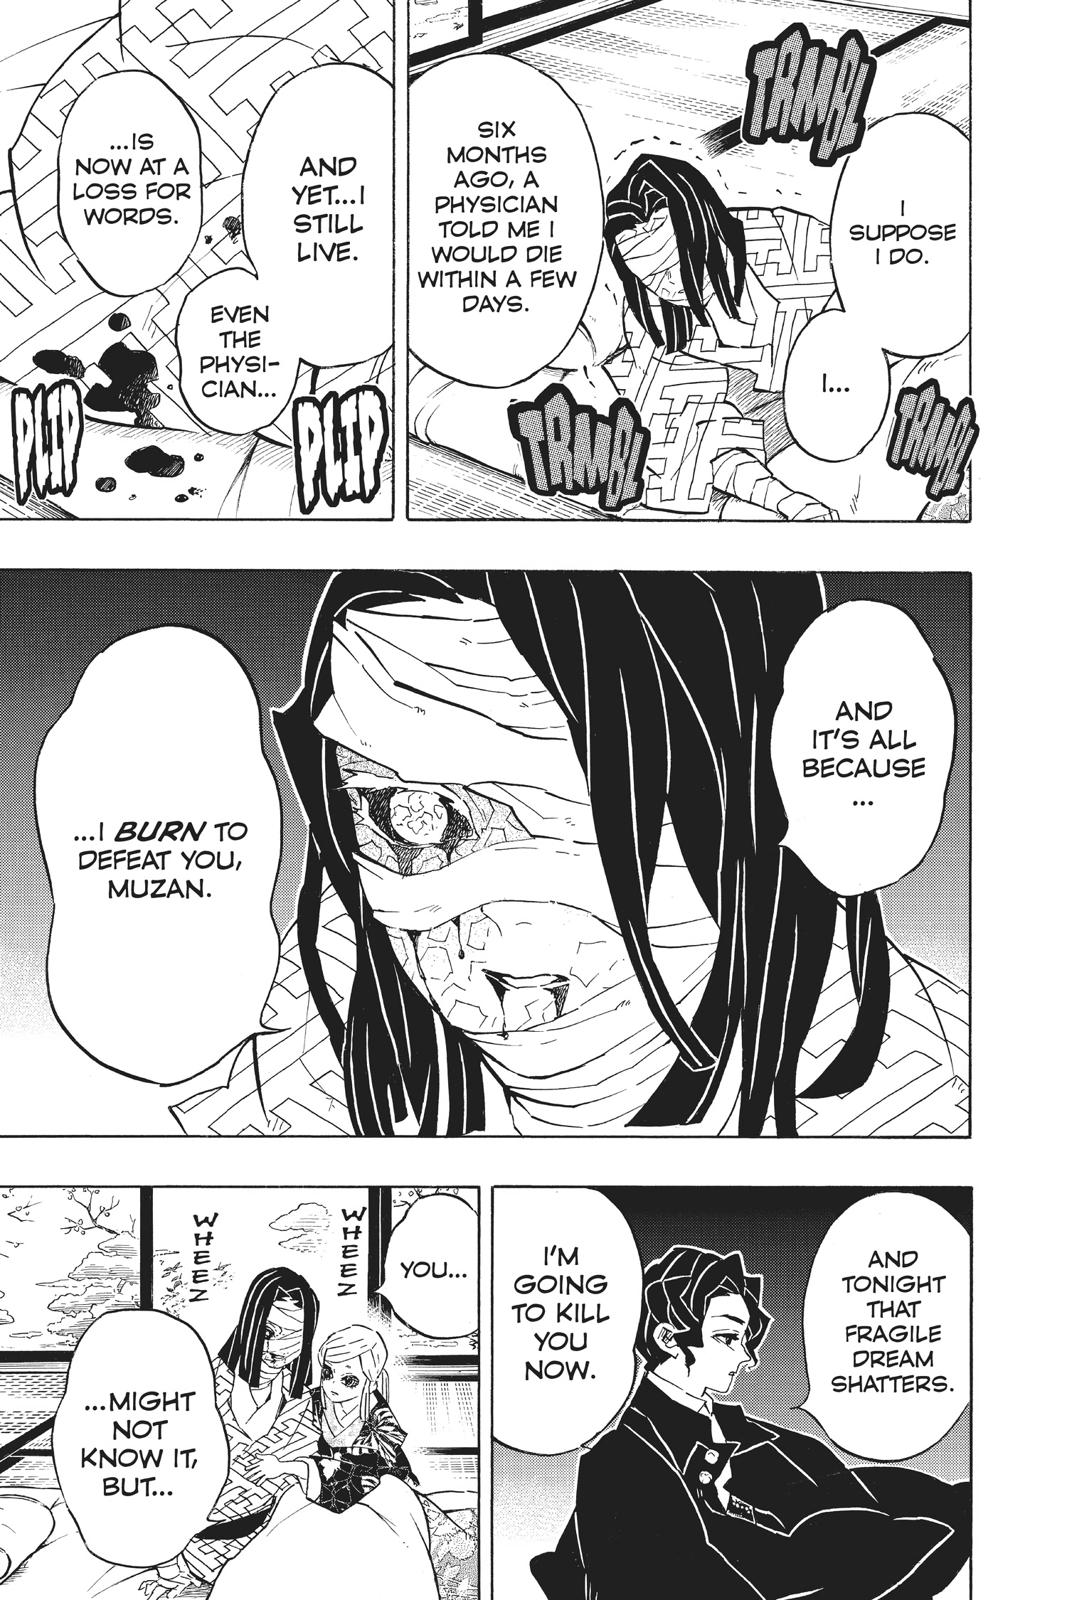 Demon Slayer Manga Manga Chapter - 137 - image 5